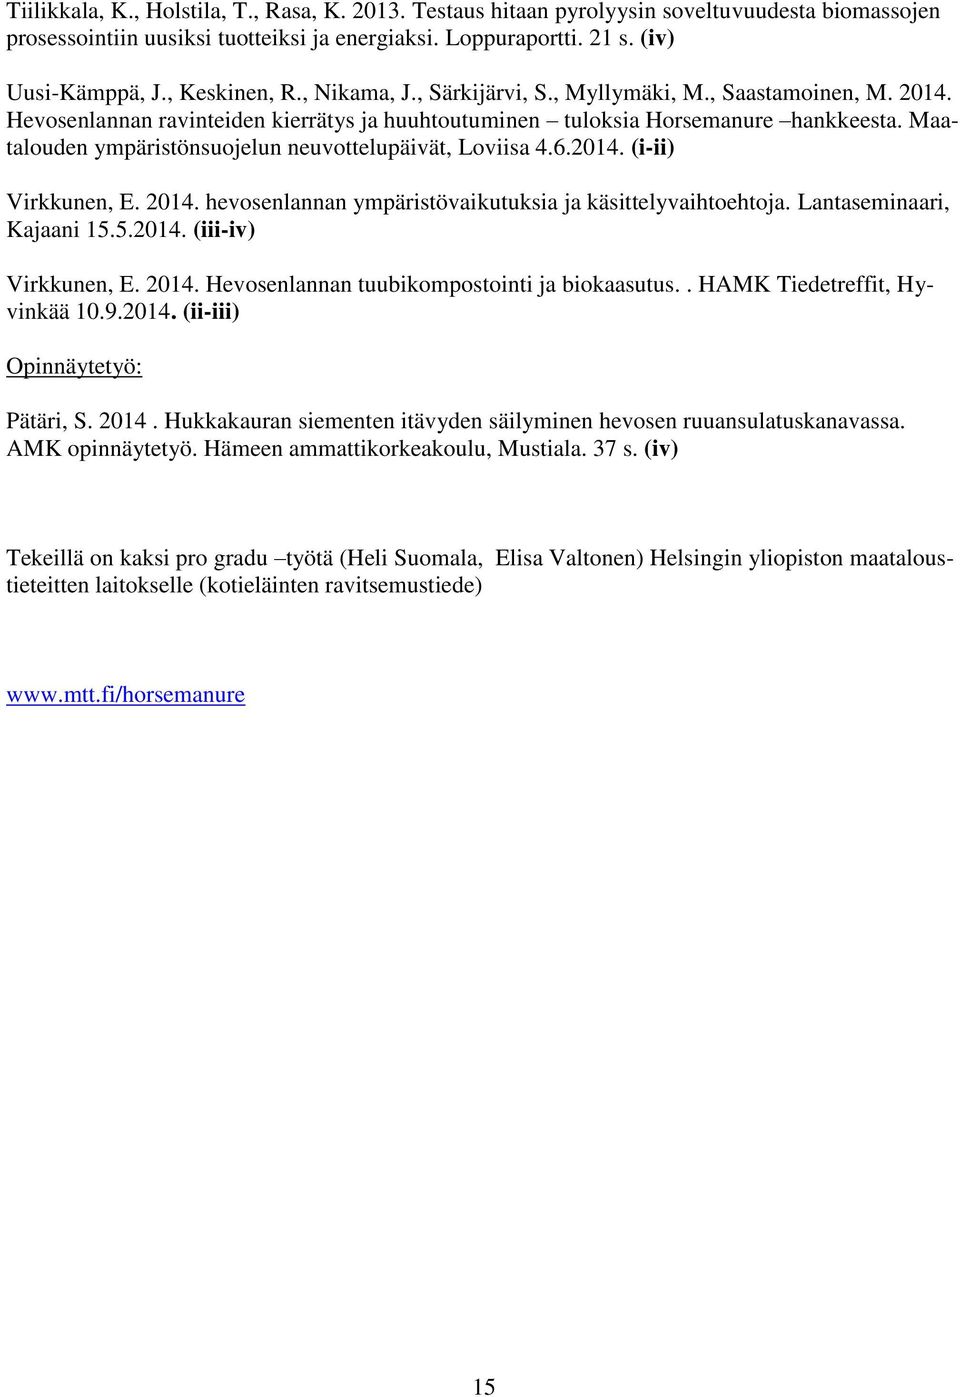 Maatalouden ympäristönsuojelun neuvottelupäivät, Loviisa 4.6.2014. (i-ii) Virkkunen, E. 2014. hevosenlannan ympäristövaikutuksia ja käsittelyvaihtoehtoja. Lantaseminaari, Kajaani 15.5.2014. (iii-iv) Virkkunen, E.